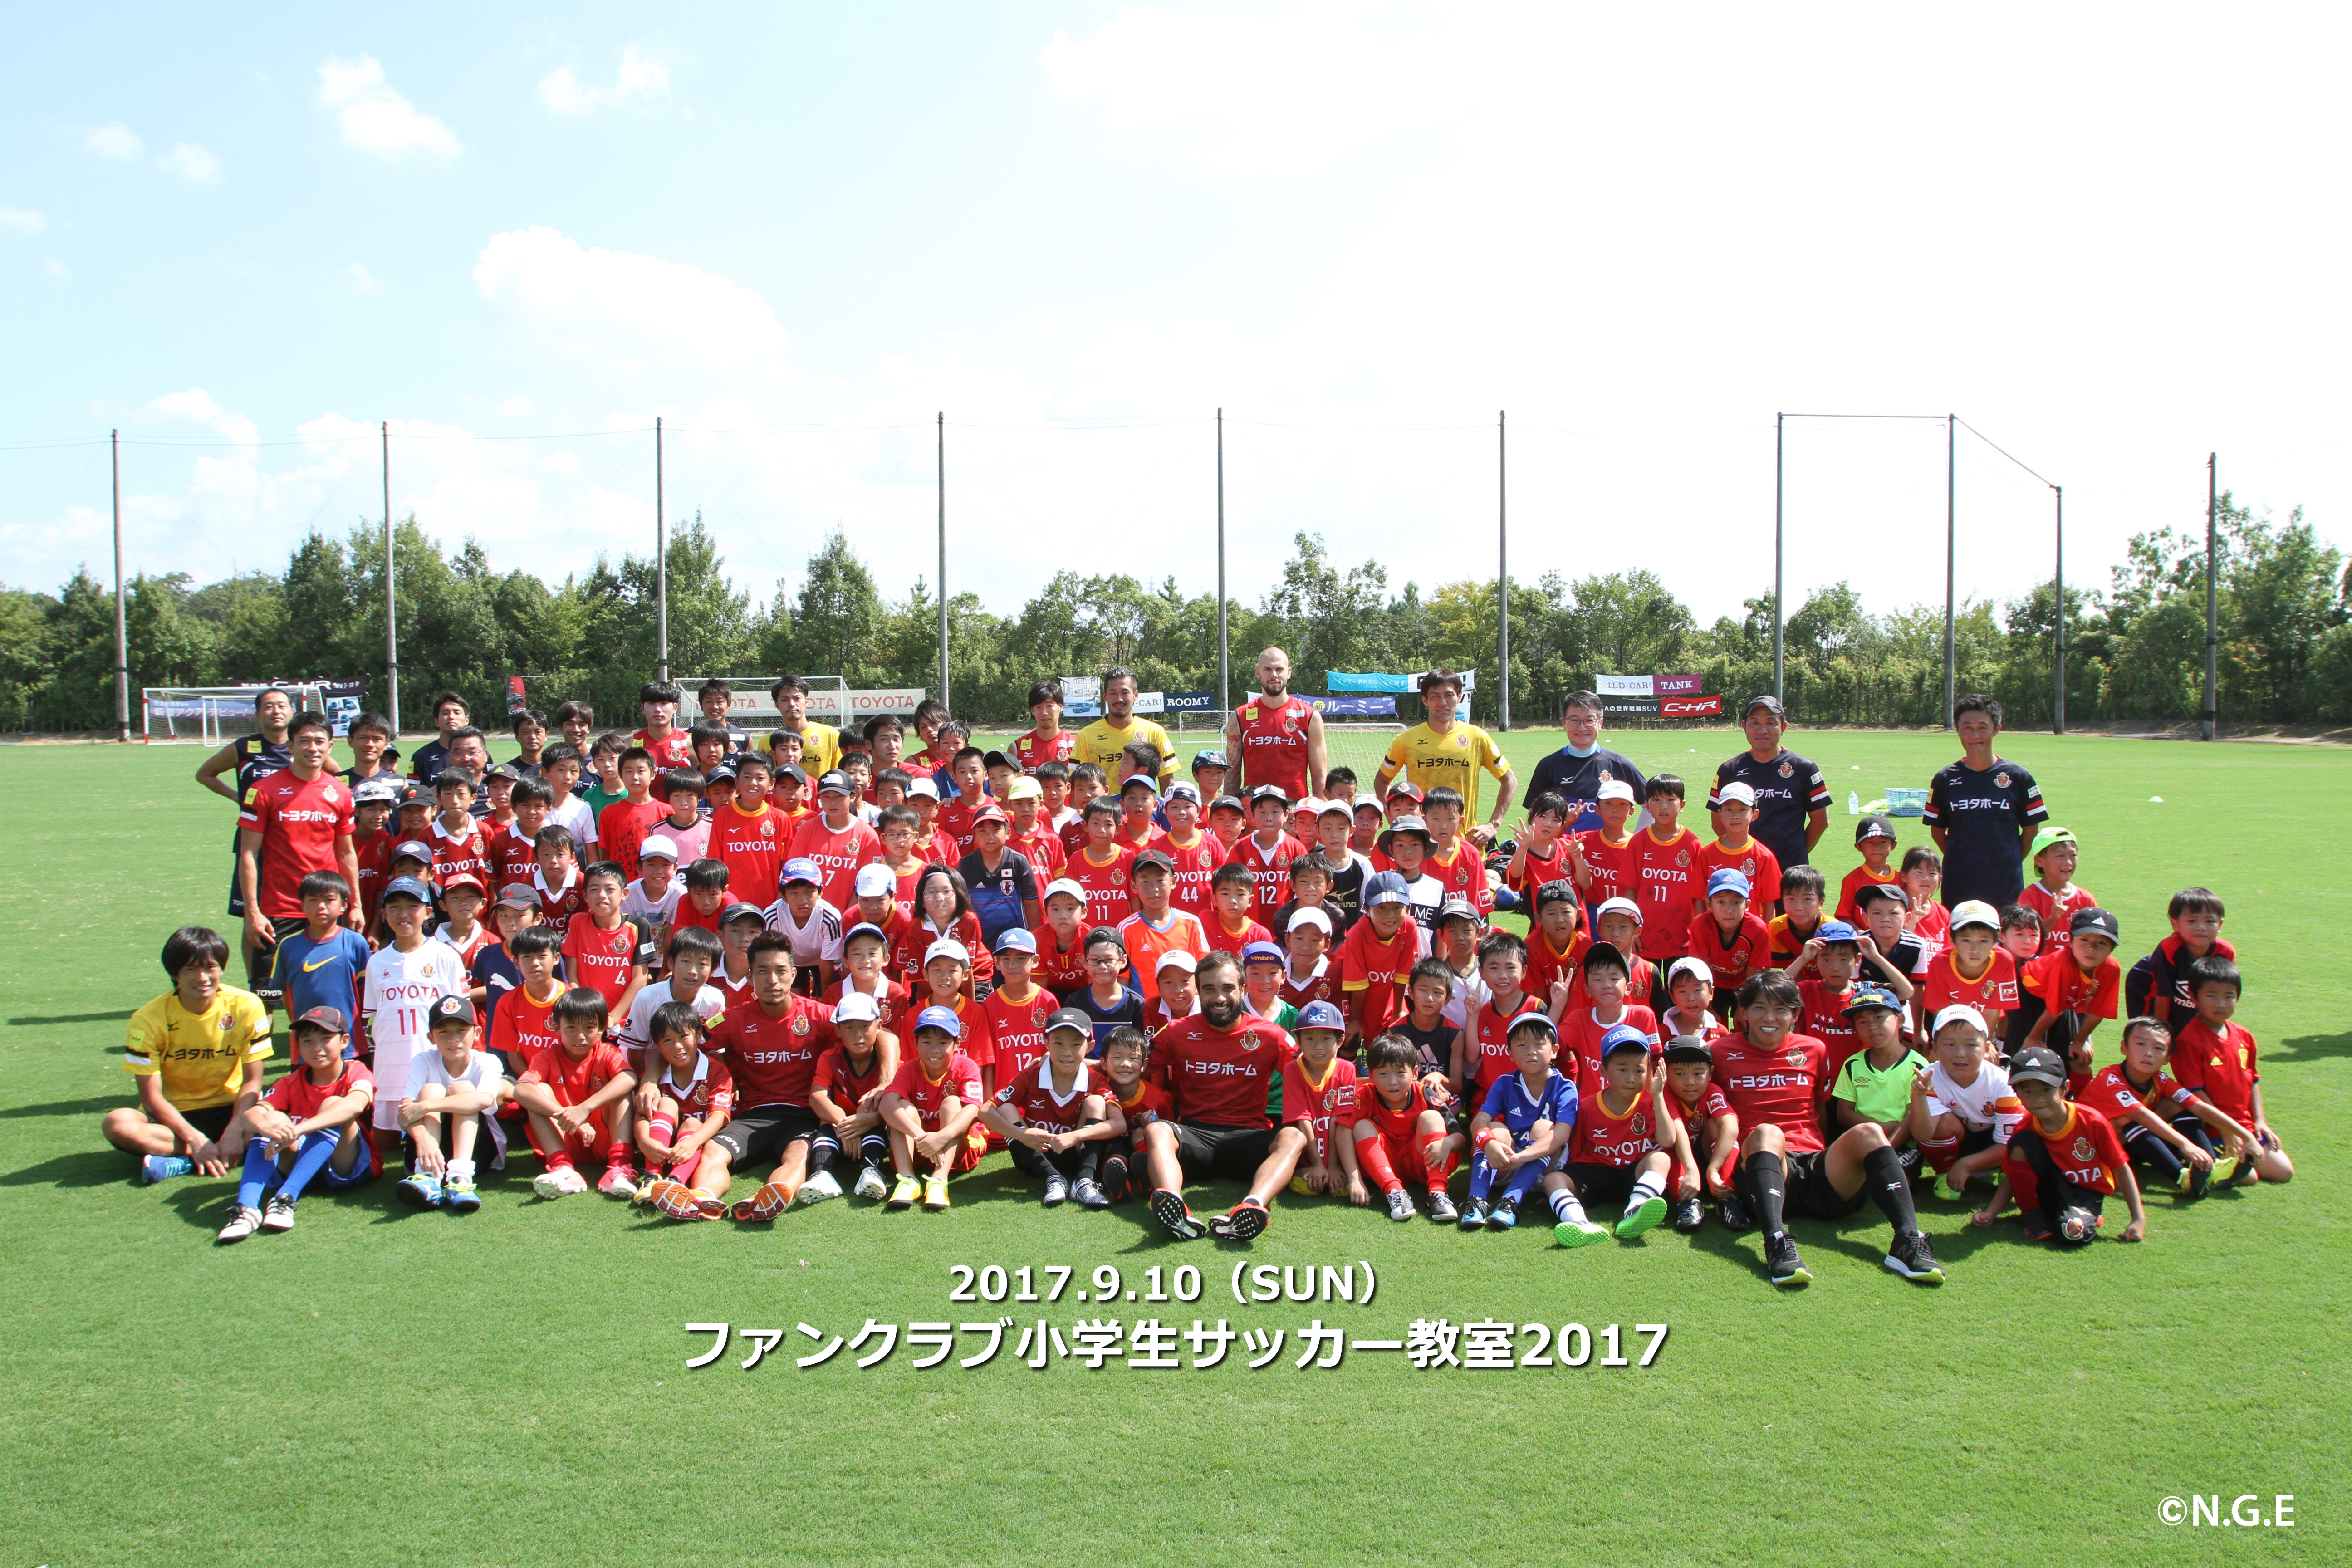 ファンクラブ小学生サッカー教室17の模様 ニュース 名古屋グランパス公式サイト